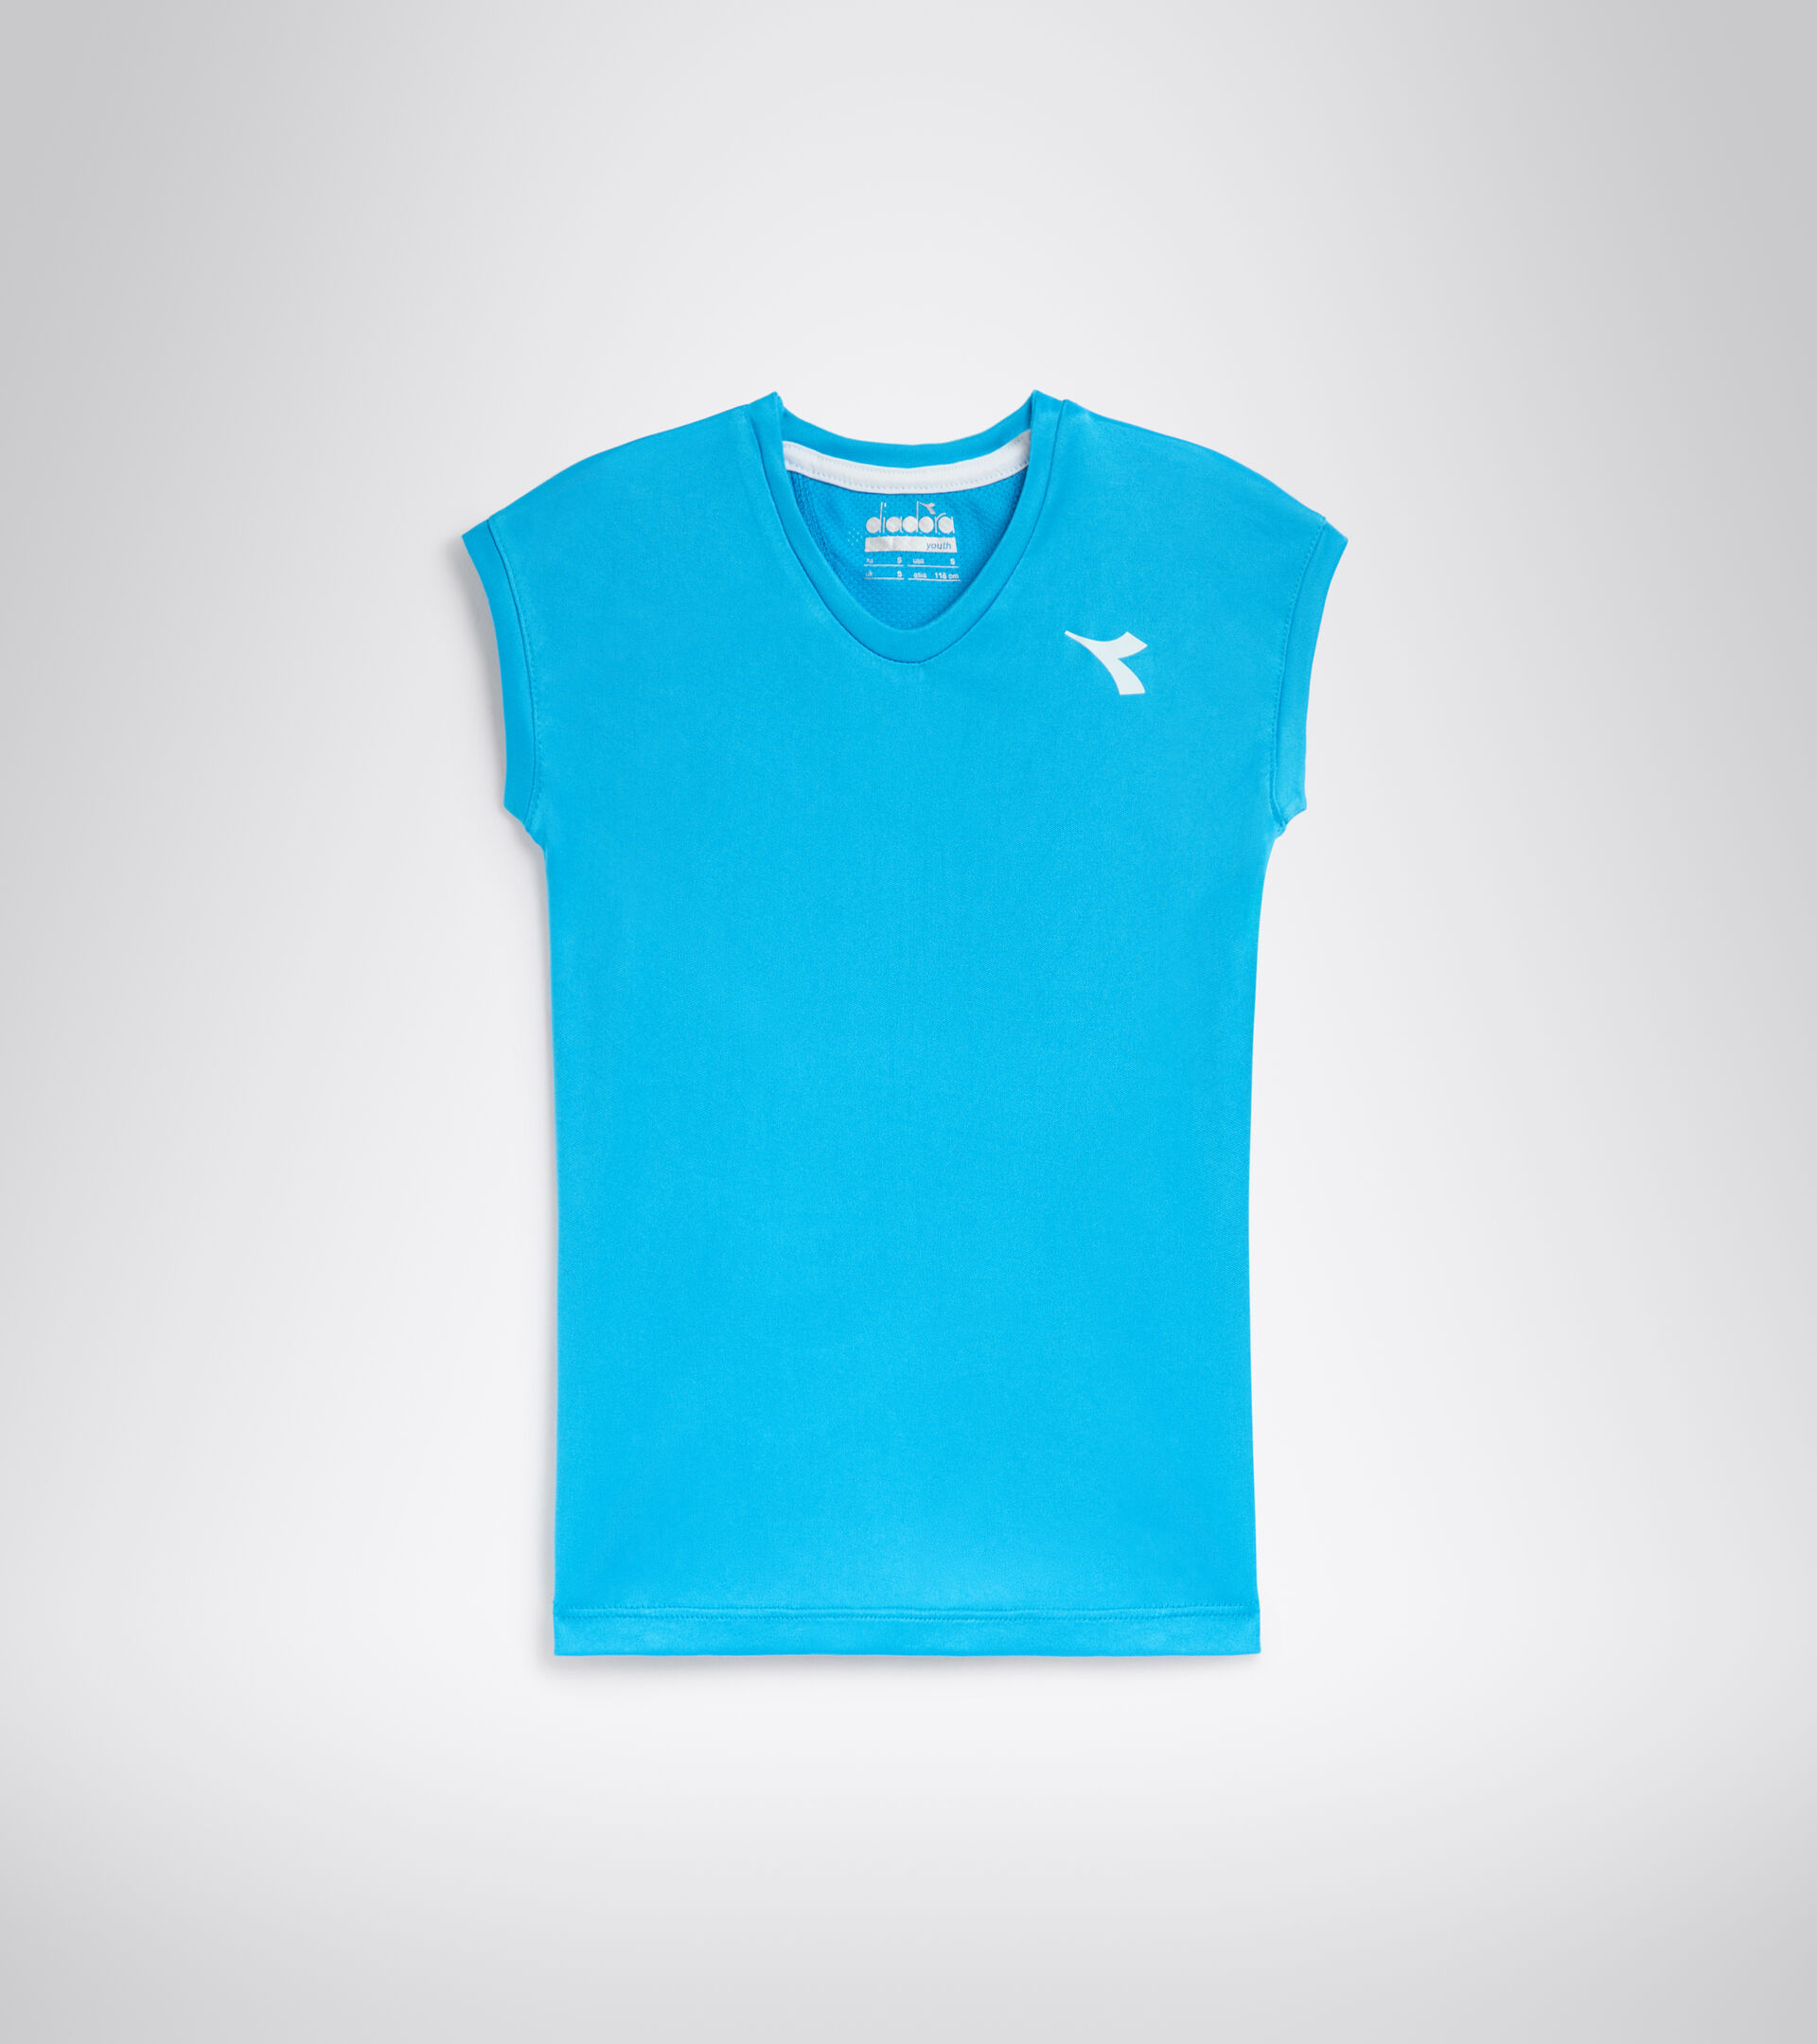 Camiseta de tenis - Junior G. T-SHIRT TEAM AZUL REAL FLUO - Diadora